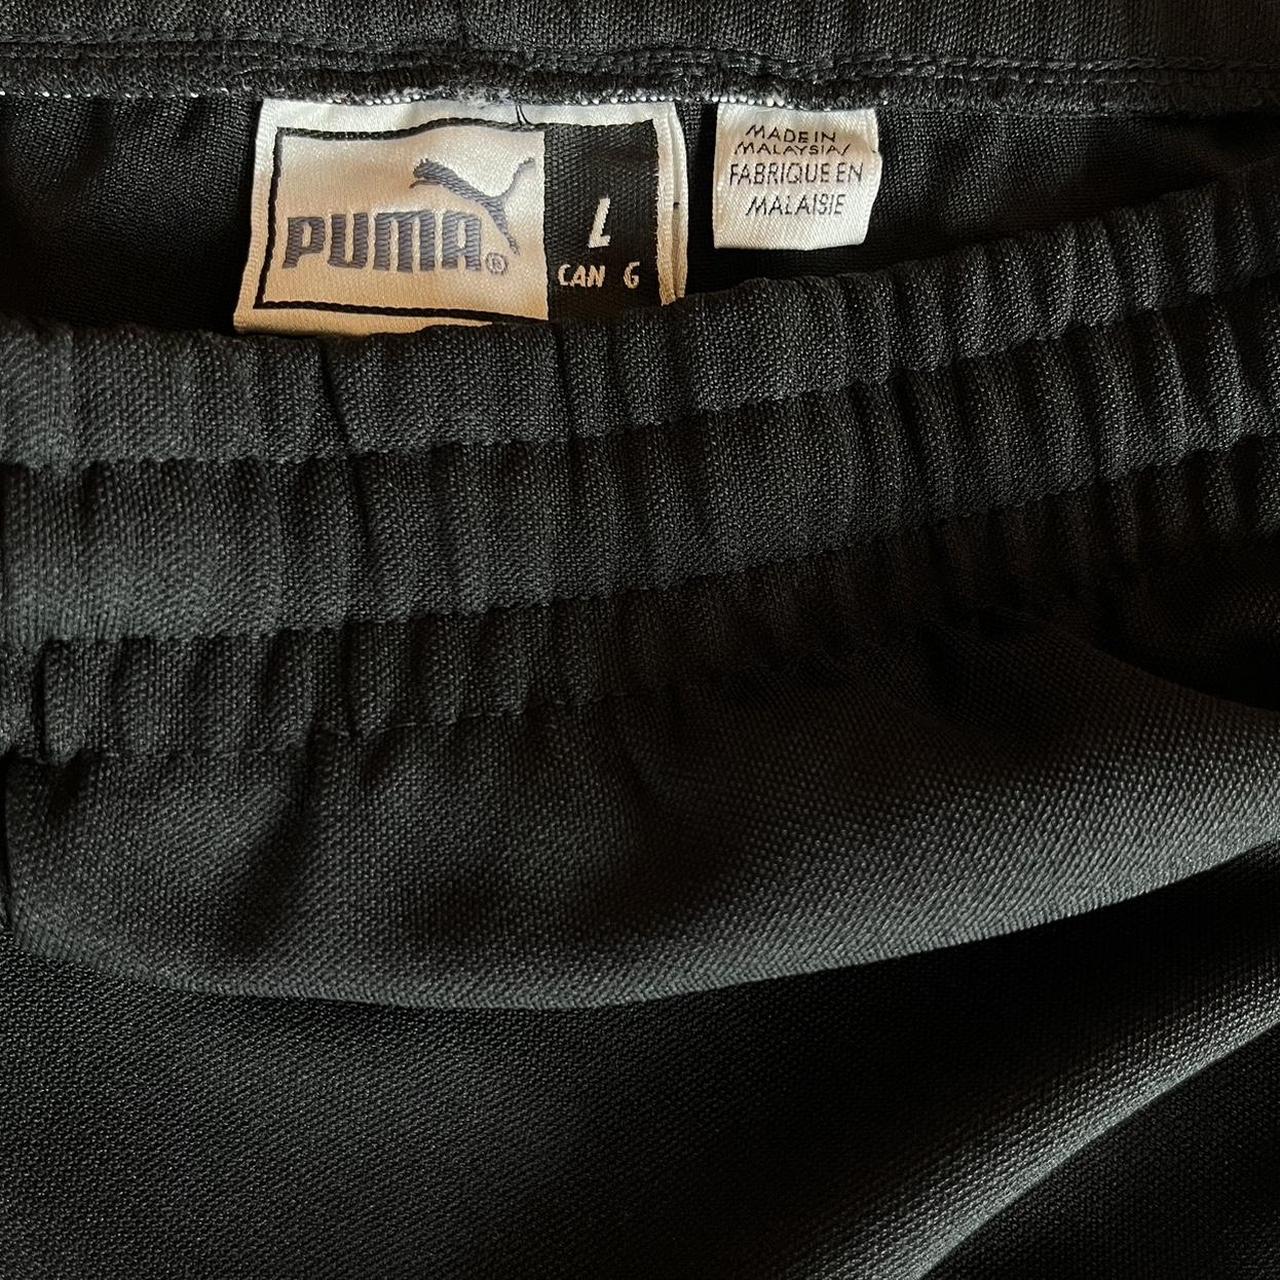 Vintage Y2K Puma Tearaway Track Pants. Size -... - Depop